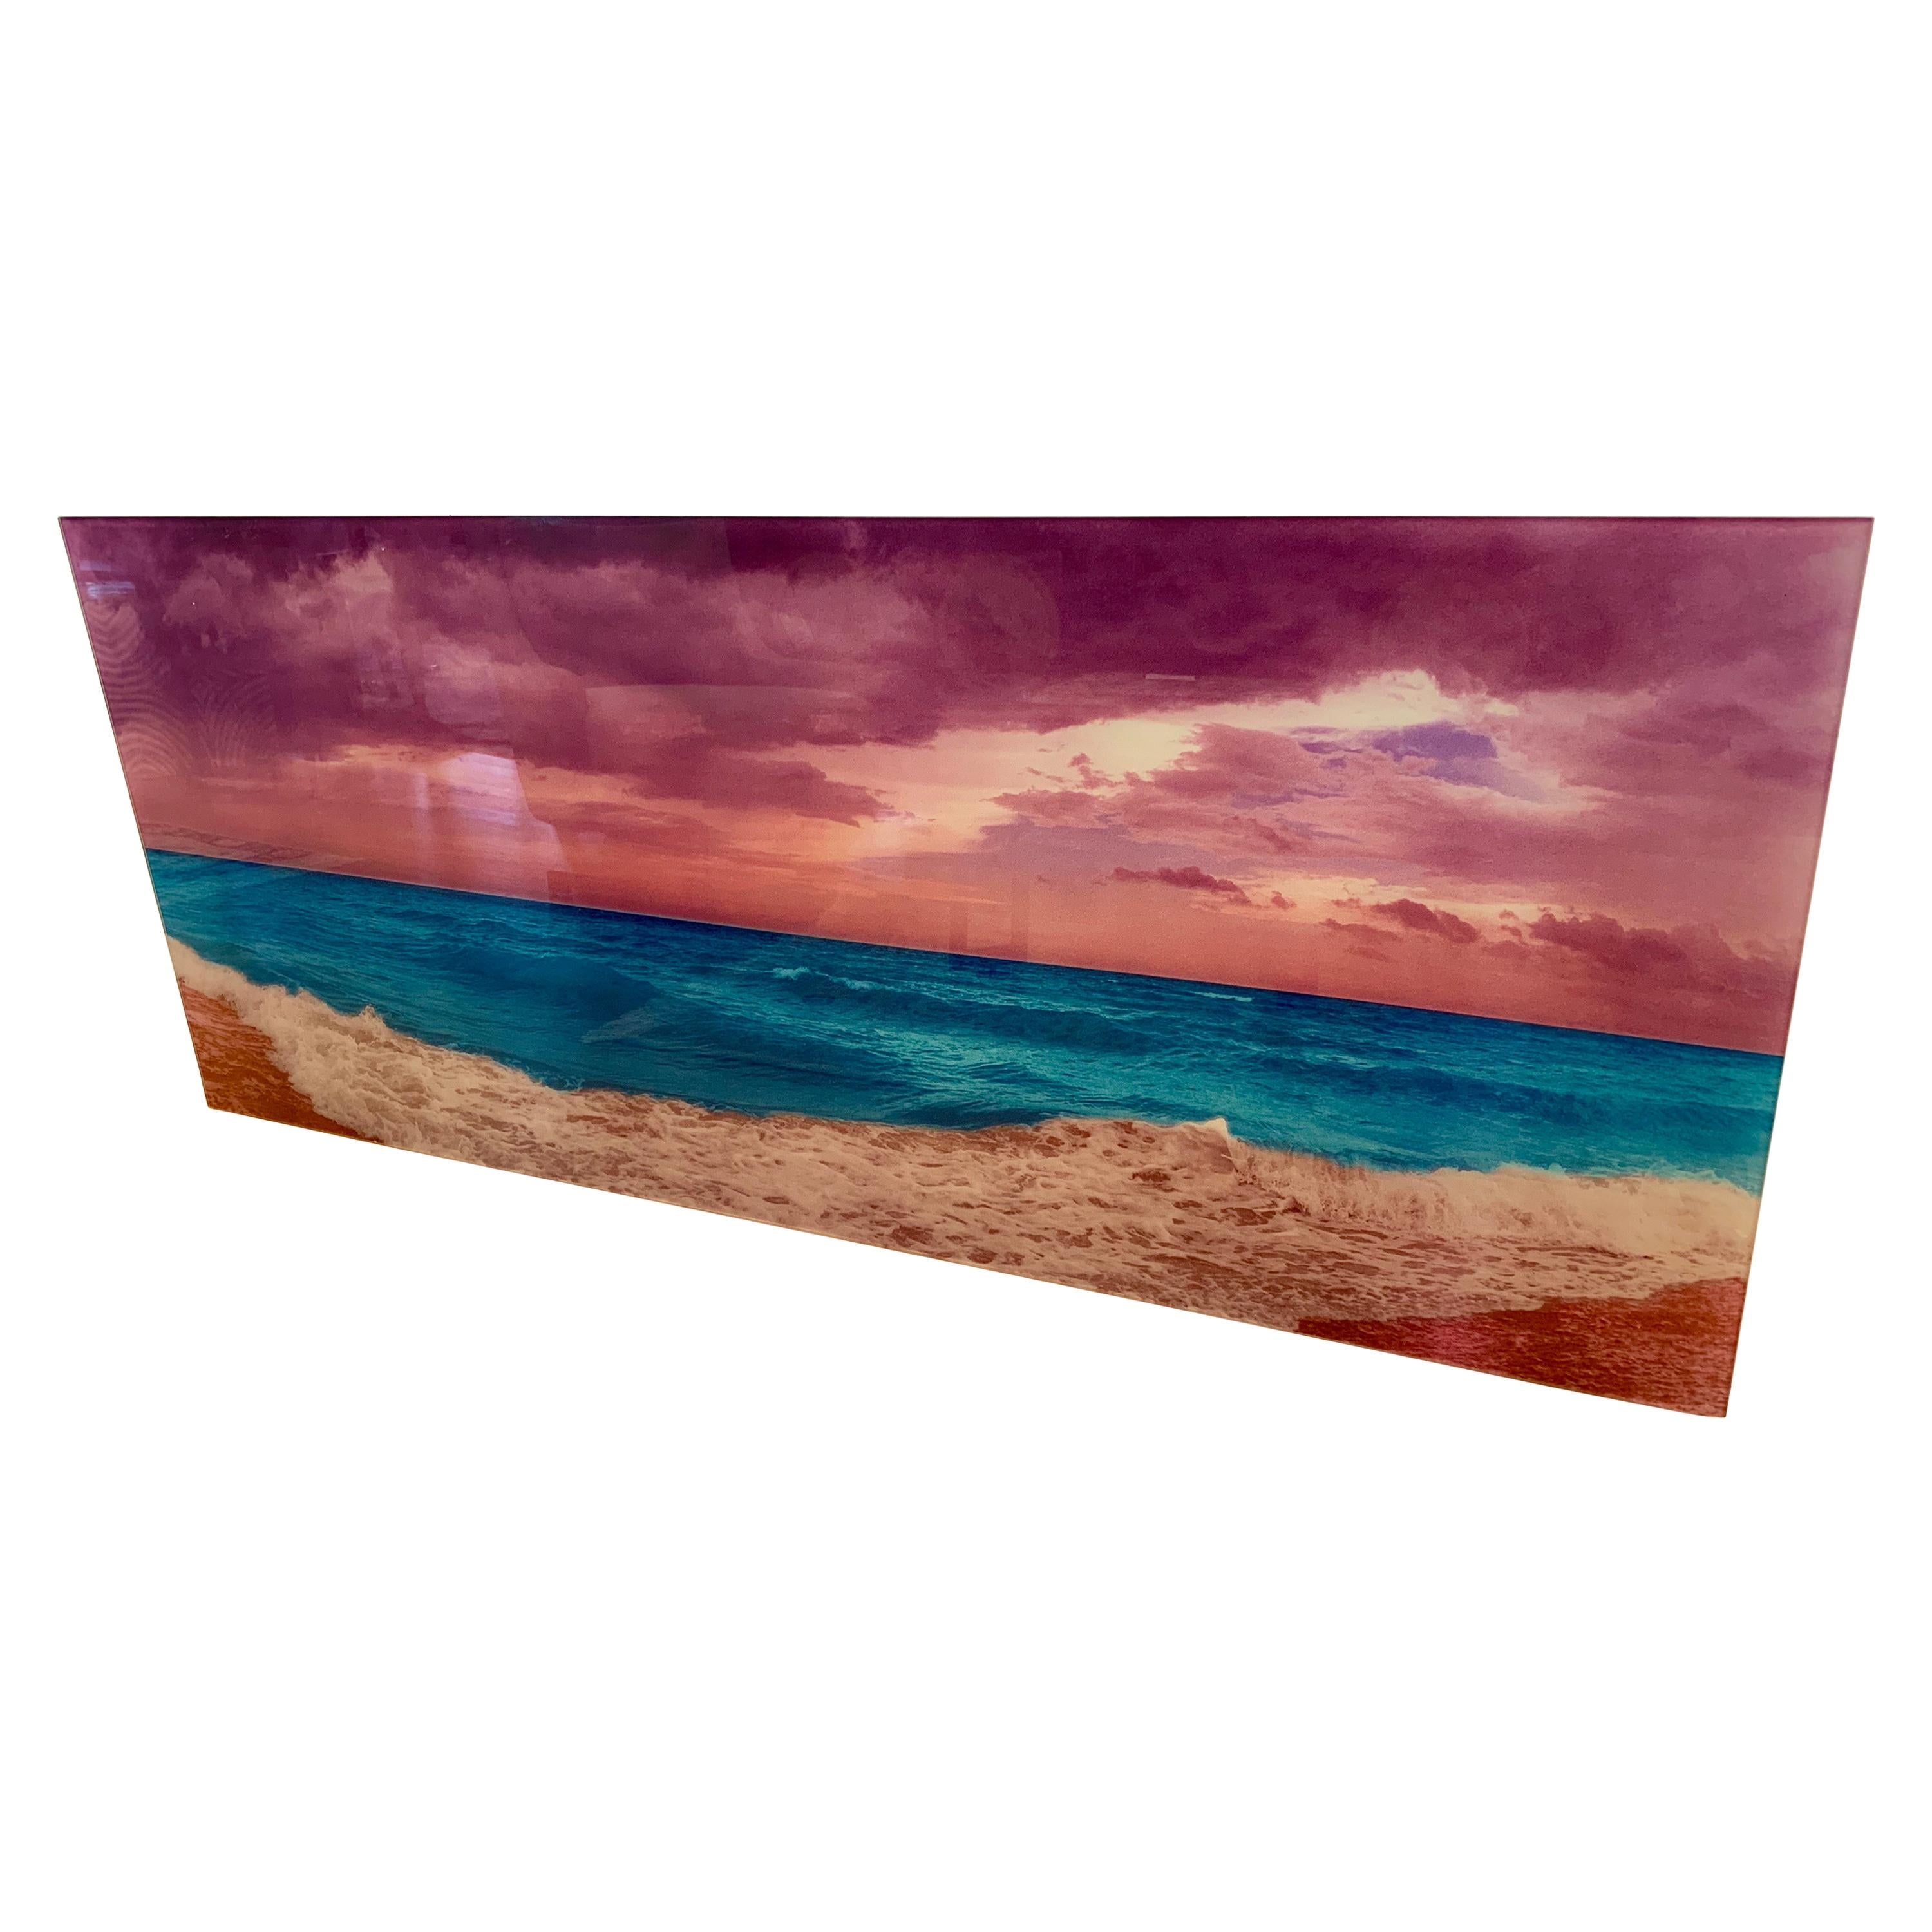 Signed Isack Kousnsky Extra Large Photo on Vibrachrome Titled Panoramic Ocean